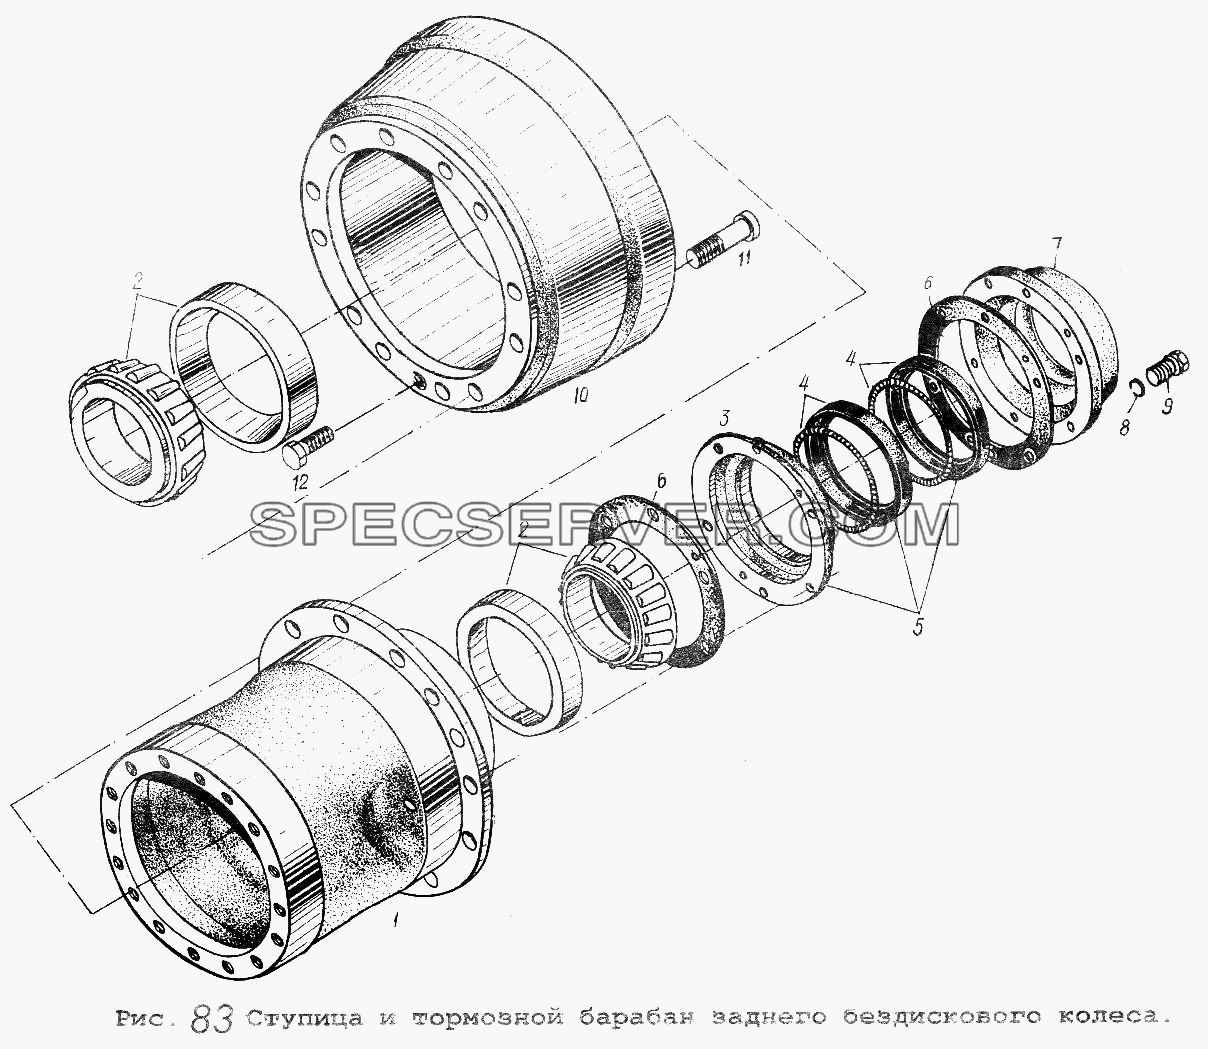 Ступица и тормозной барабан заднего бездискового колеса для МАЗ-5516 (список запасных частей)